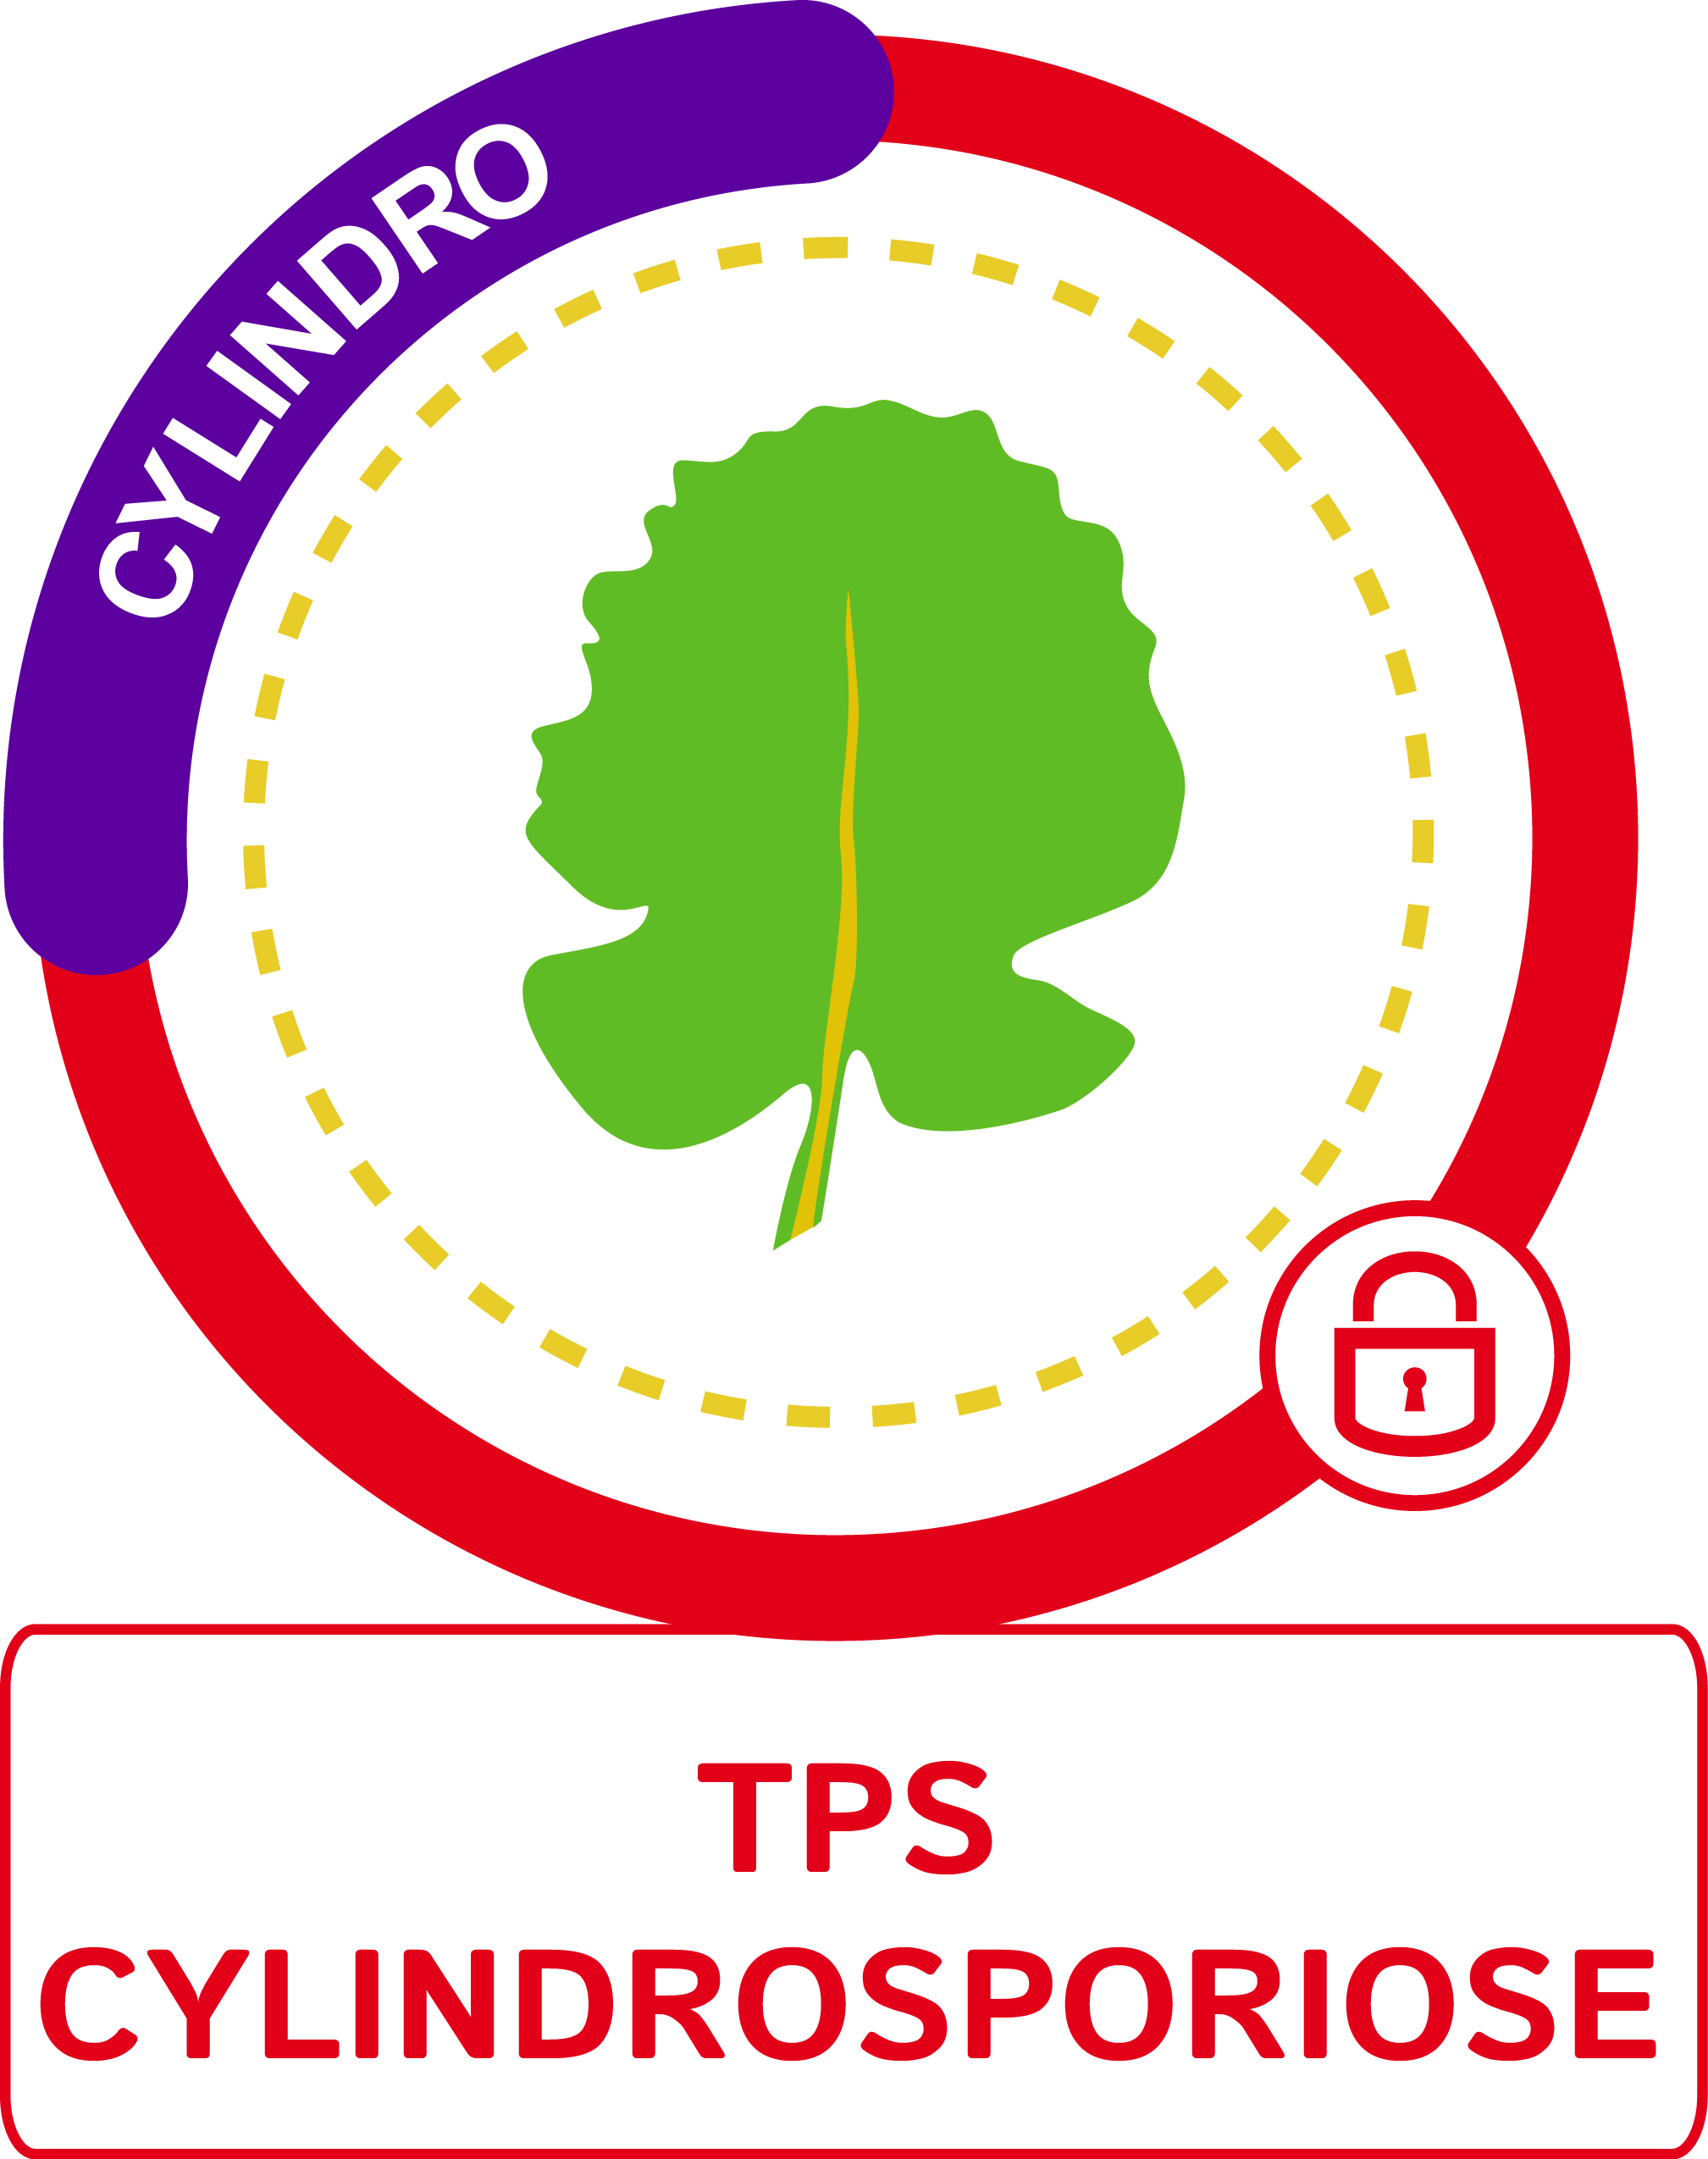 Visuel TPS cylindrosporiose